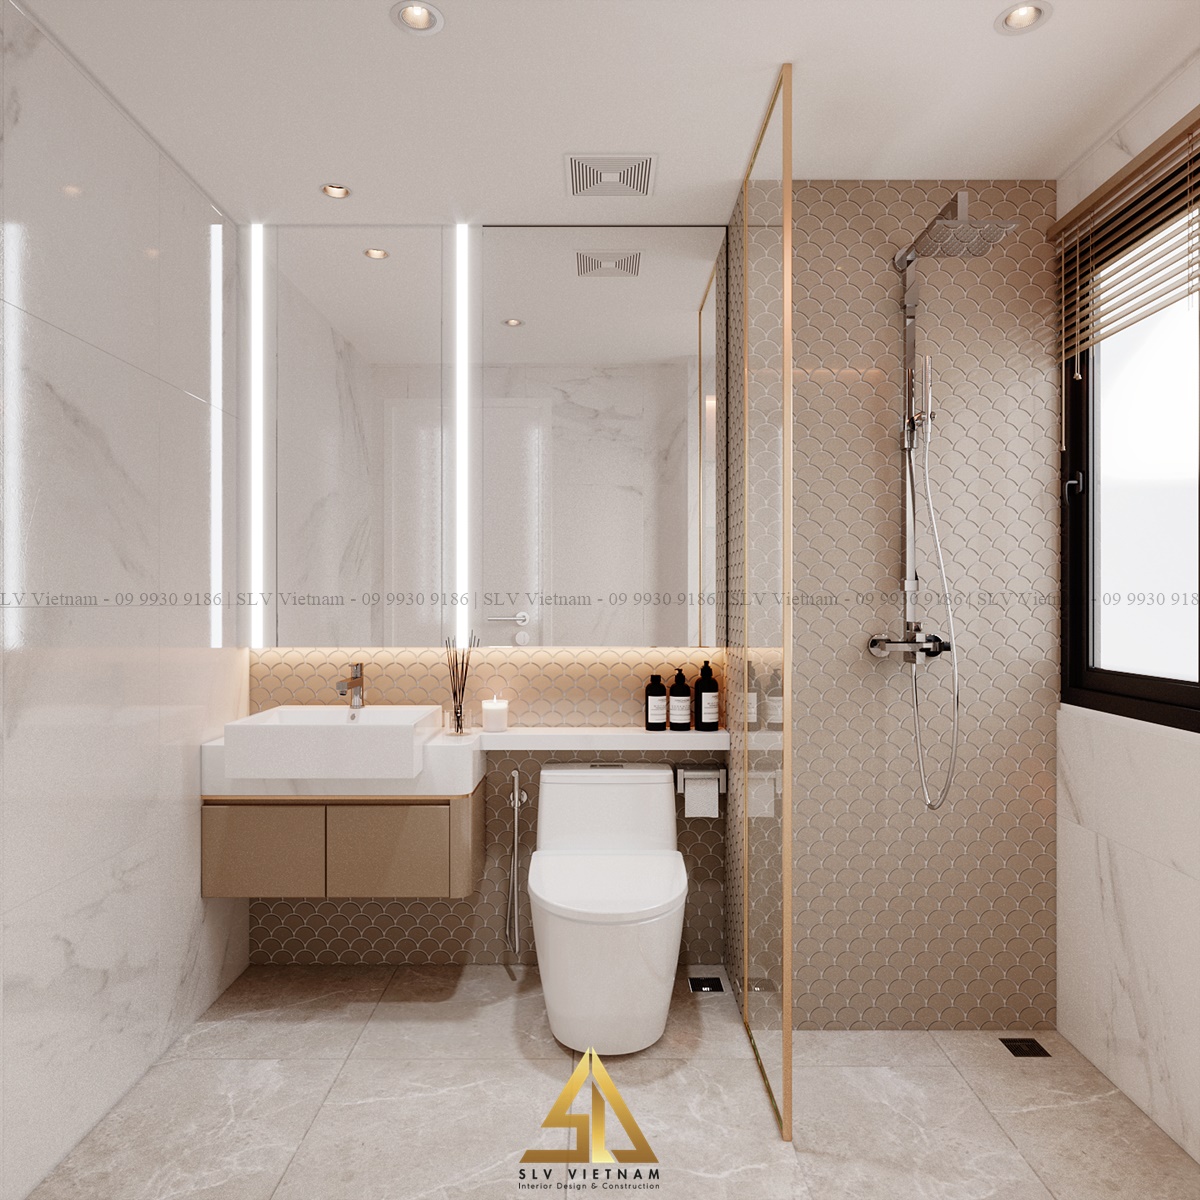 Các thiết bị vệ sinh âm tường là sự lựa chọn hoàn hảo cho phòng tắm hiện đại và sạch sẽ (Dự án của SLV Vietnam)